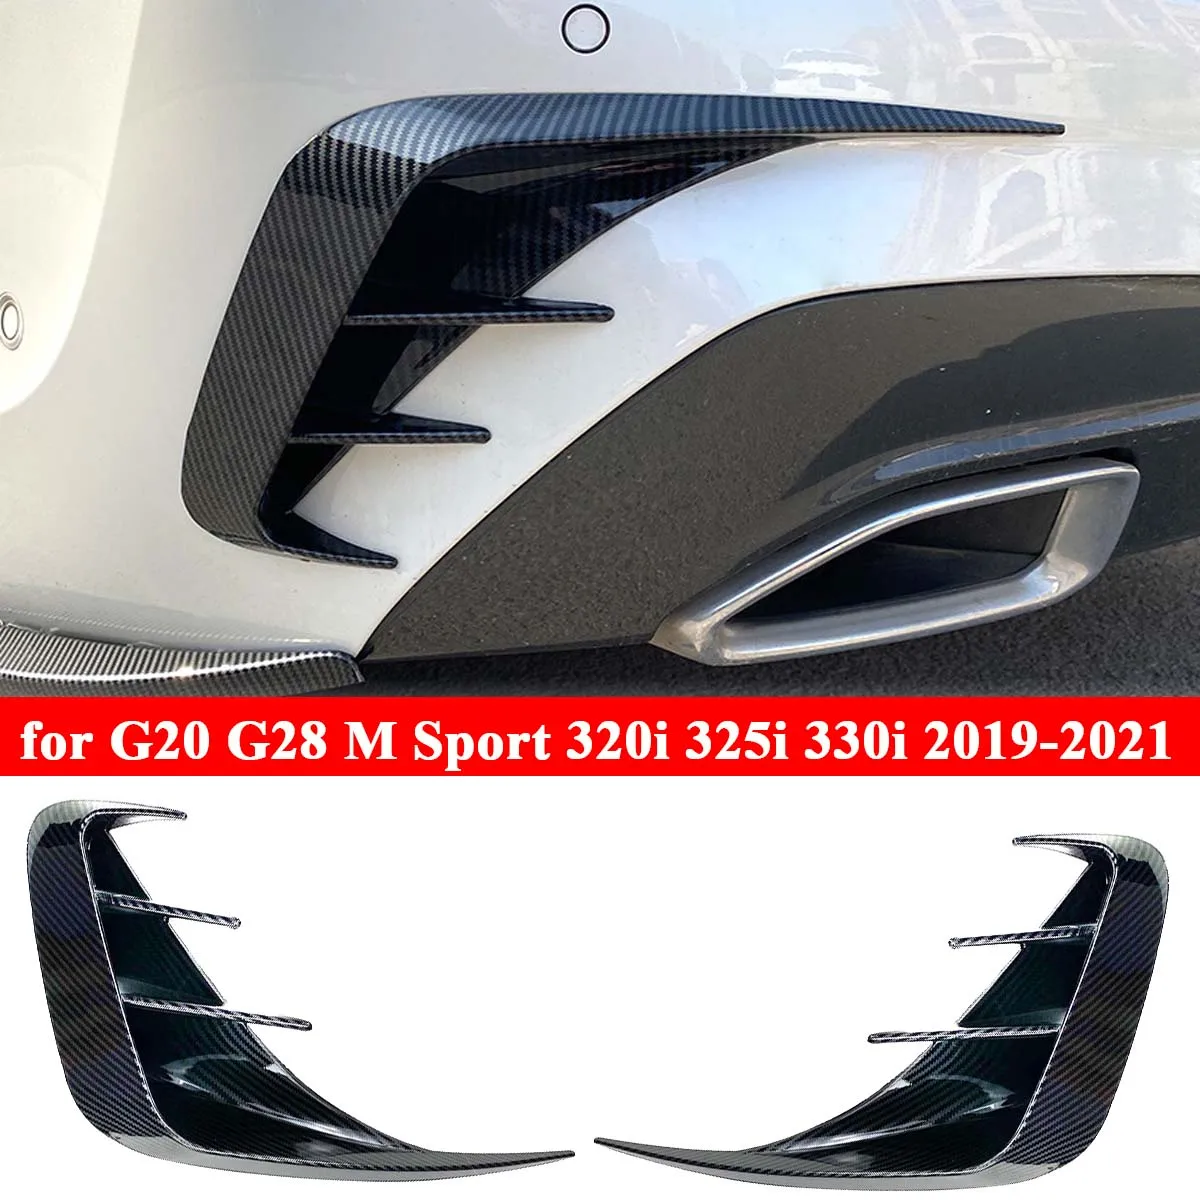 BMW için G20 G28 M Spor Arka Tampon Splitter Difüzör Yan Kapak spoiler kovanı Etiket 318i 320i 330i 2019-2021 Araba Aksesuarları